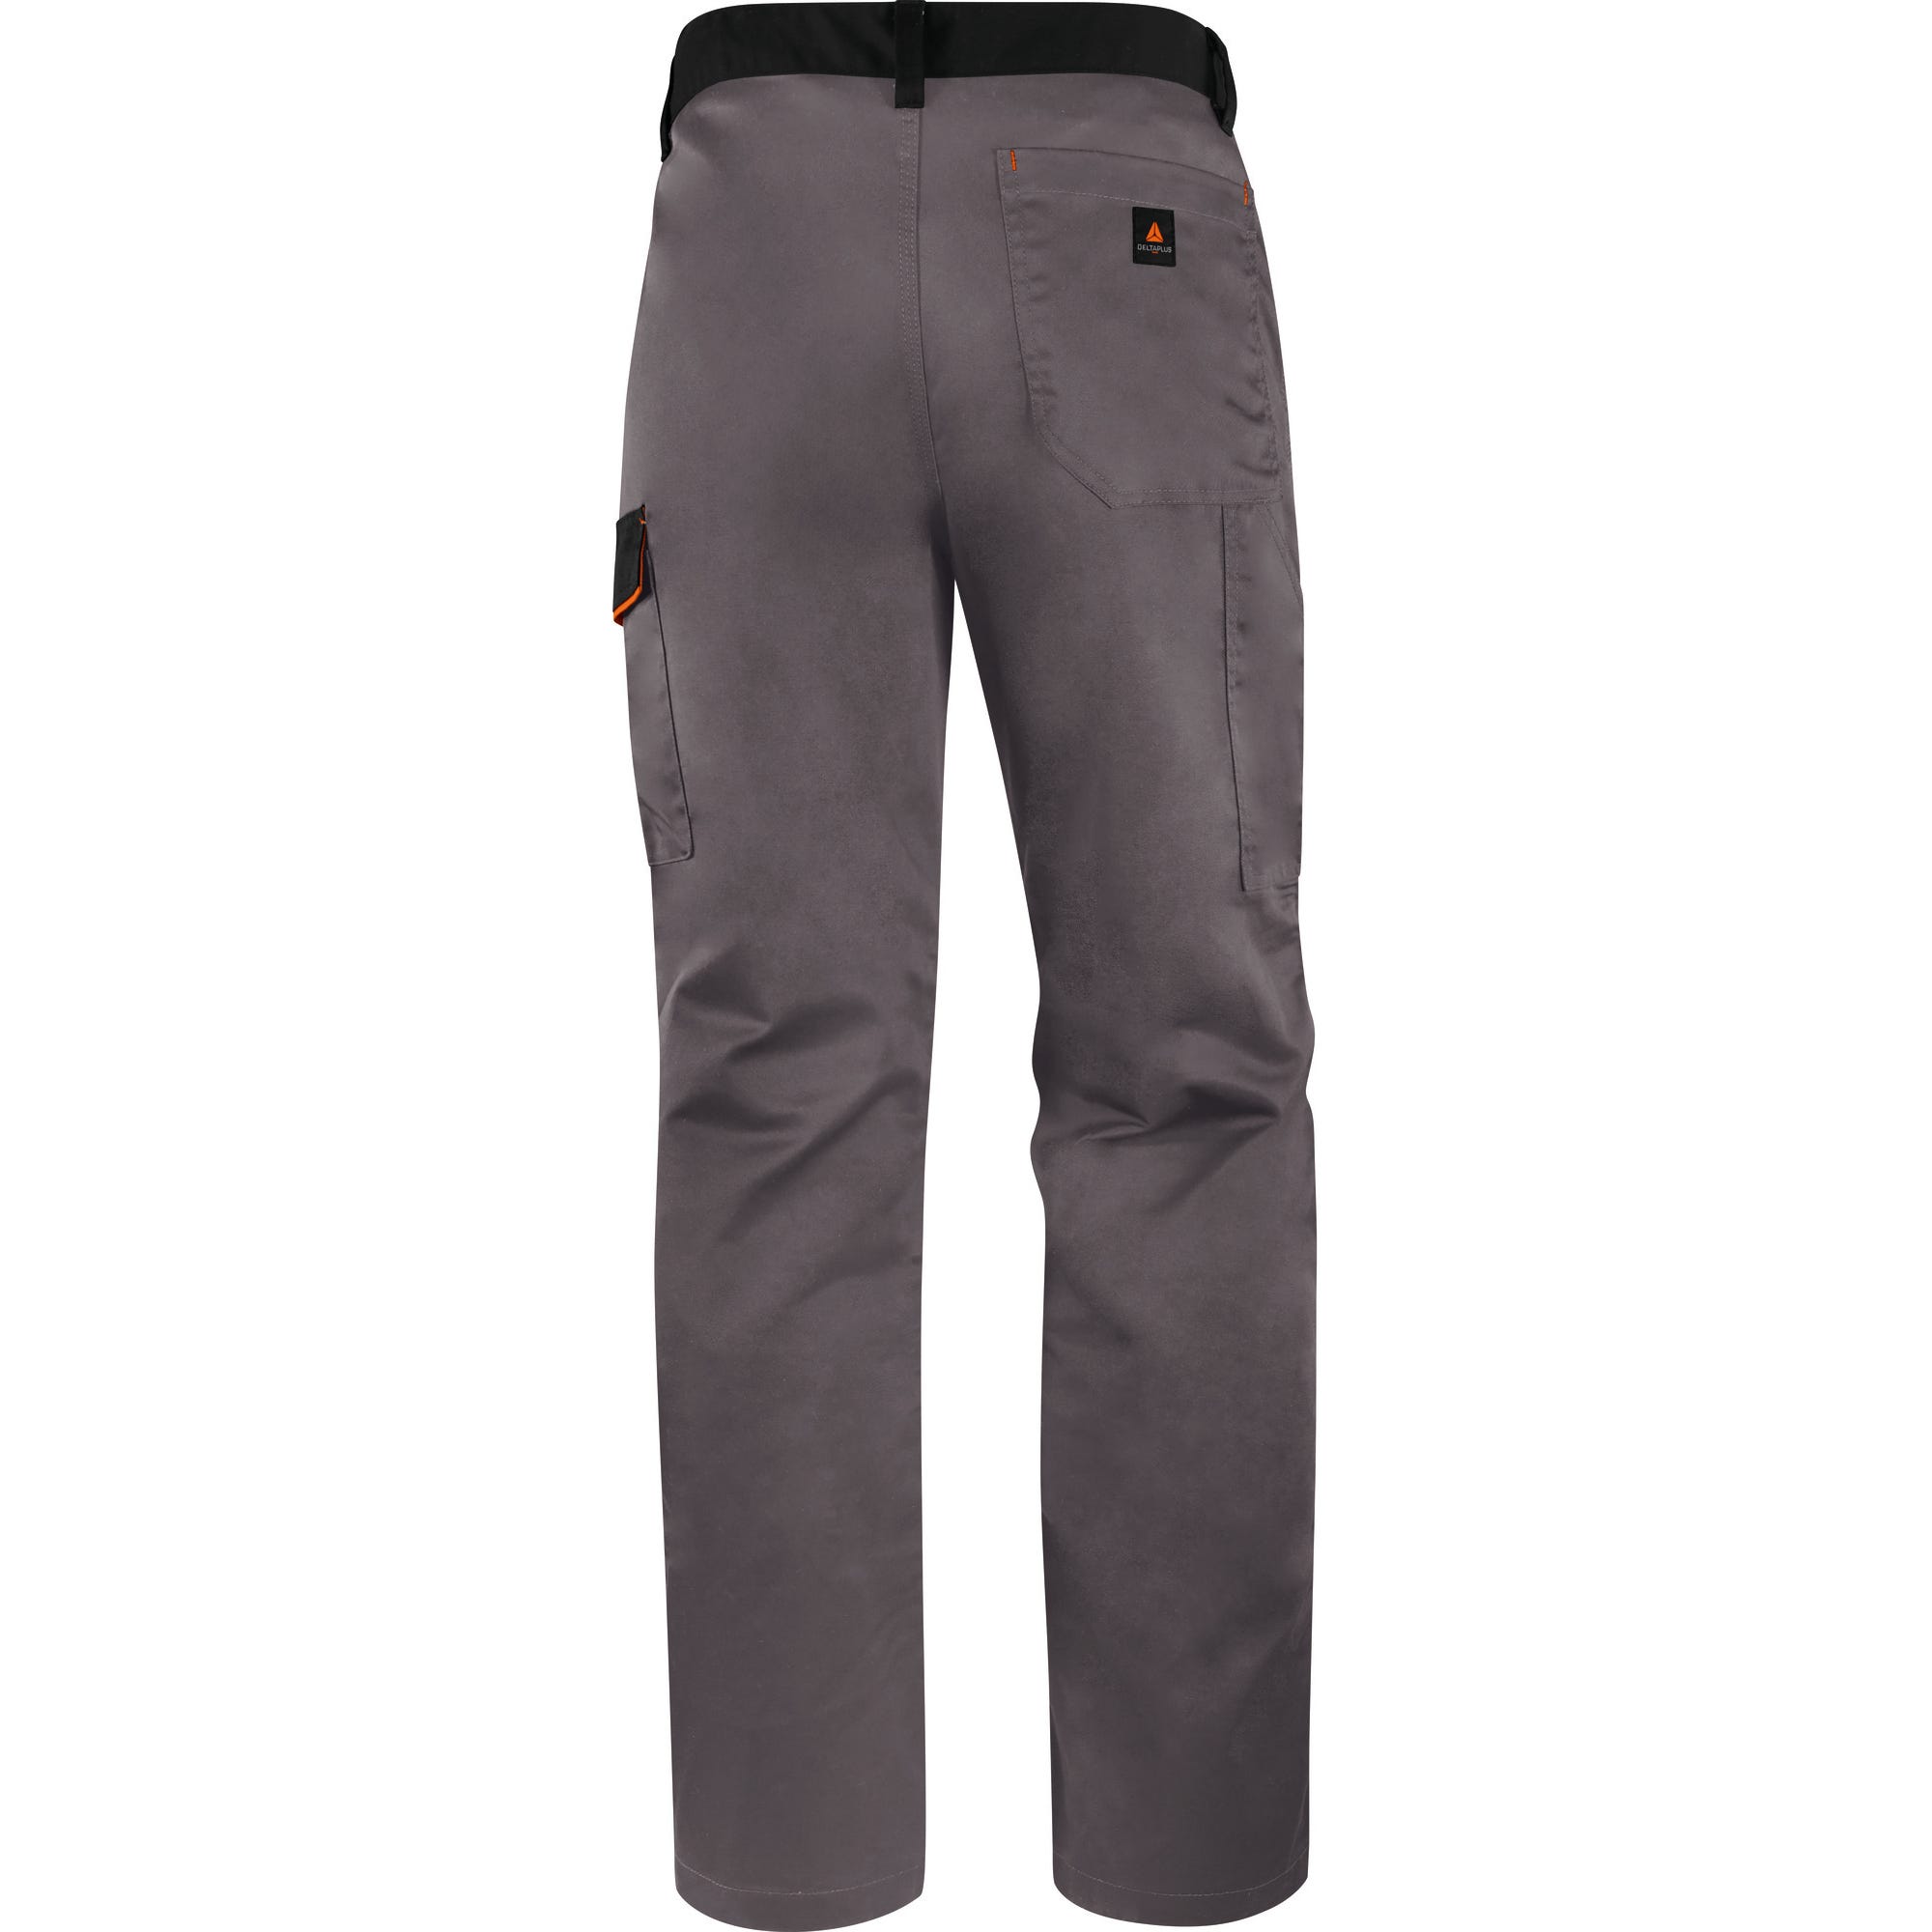 Pantalon de travail gris/orange T.M M1PA2 - DELTA PLUS 1